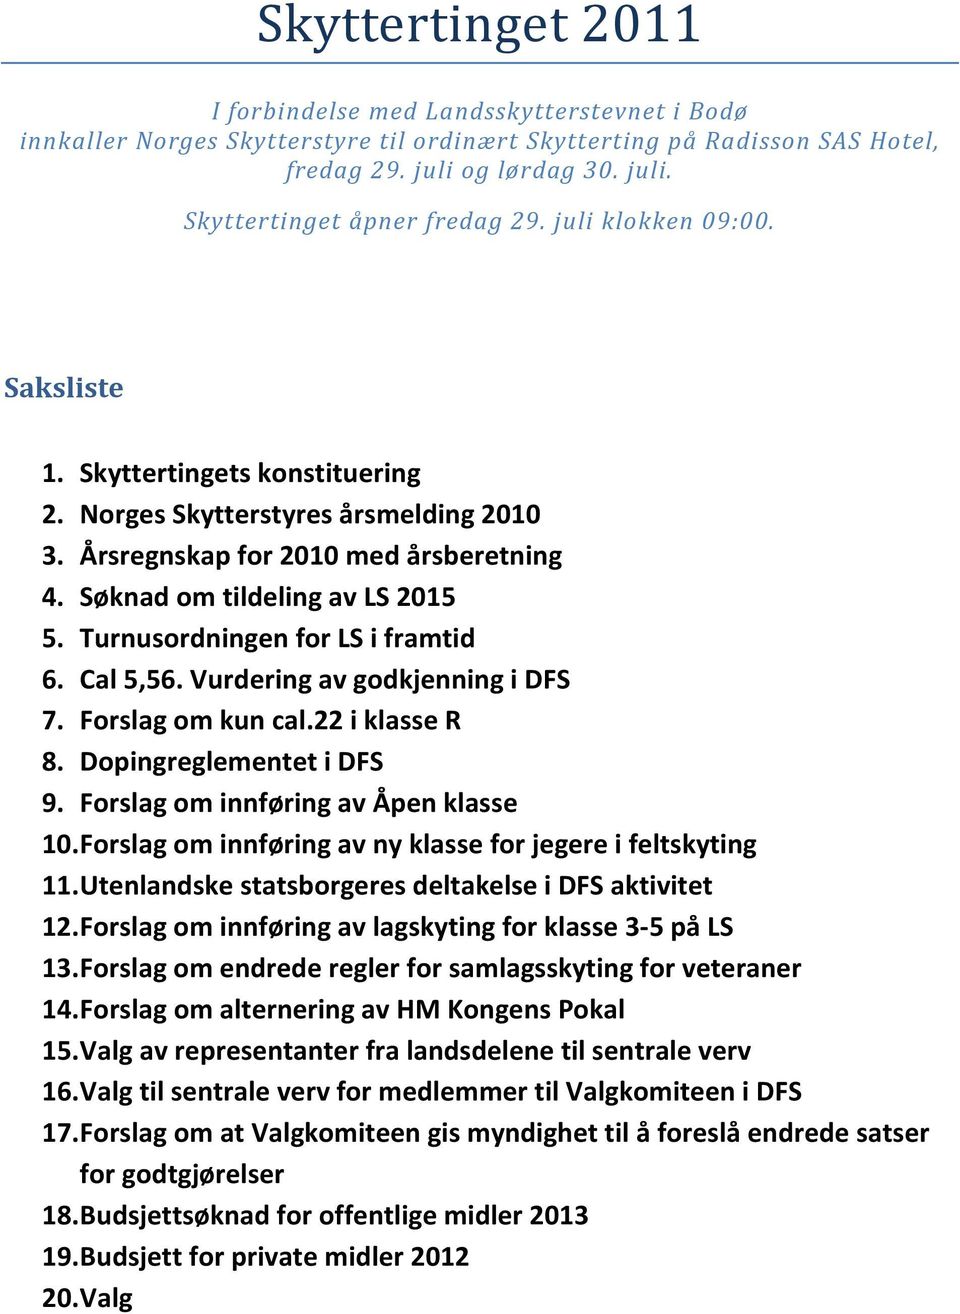 Turnusordningen for LS i framtid 6. Cal 5,56. Vurdering av godkjenning i DFS 7. Forslag om kun cal.22 i klasse R 8. Dopingreglementet i DFS 9. Forslag om innføring av Åpen klasse 10.